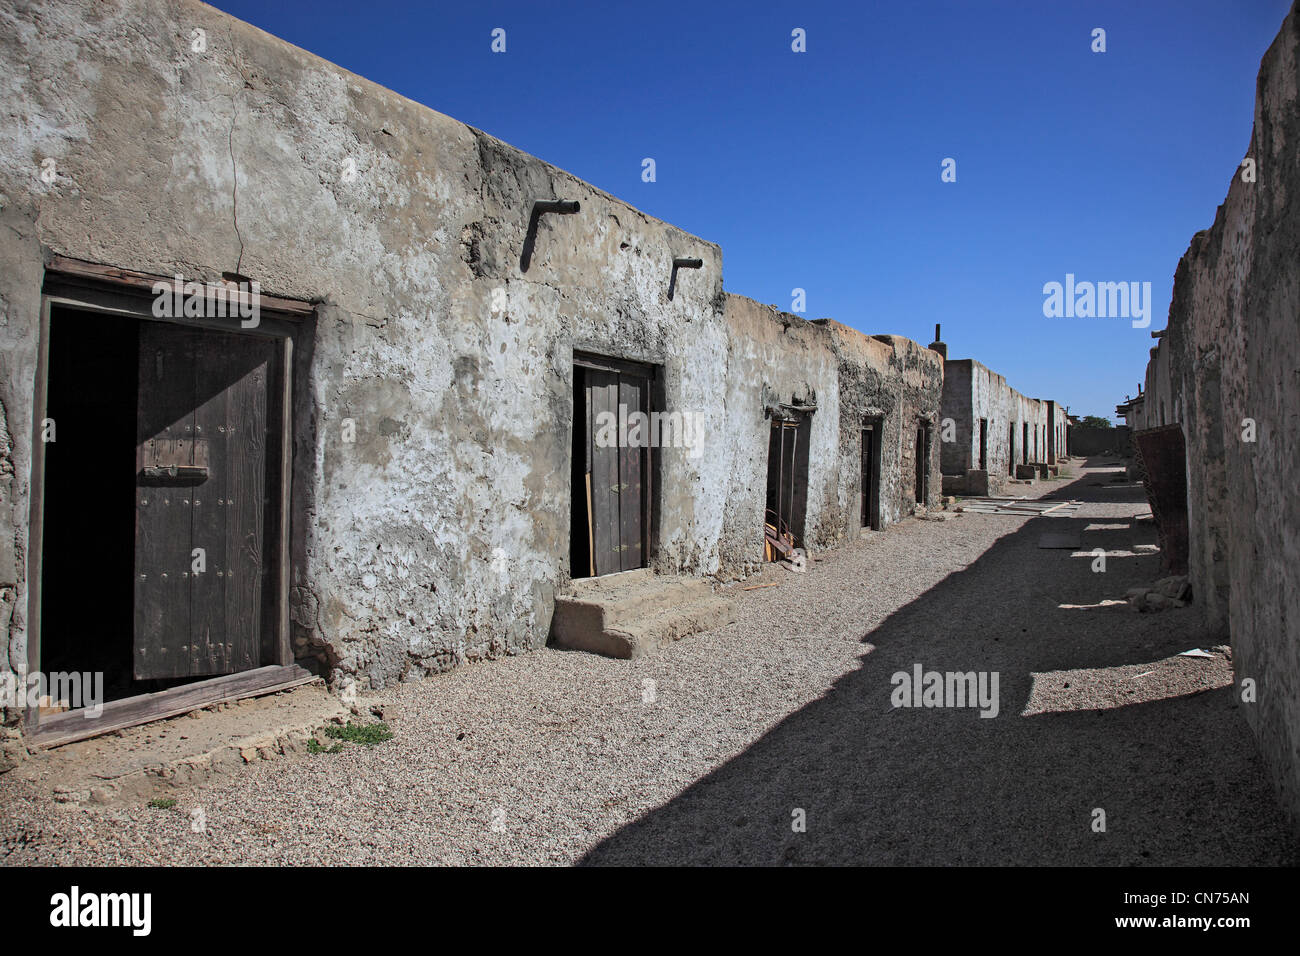 Der historische Souk (Ruinen) in Mirbat im Süden des Oman Foto Stock